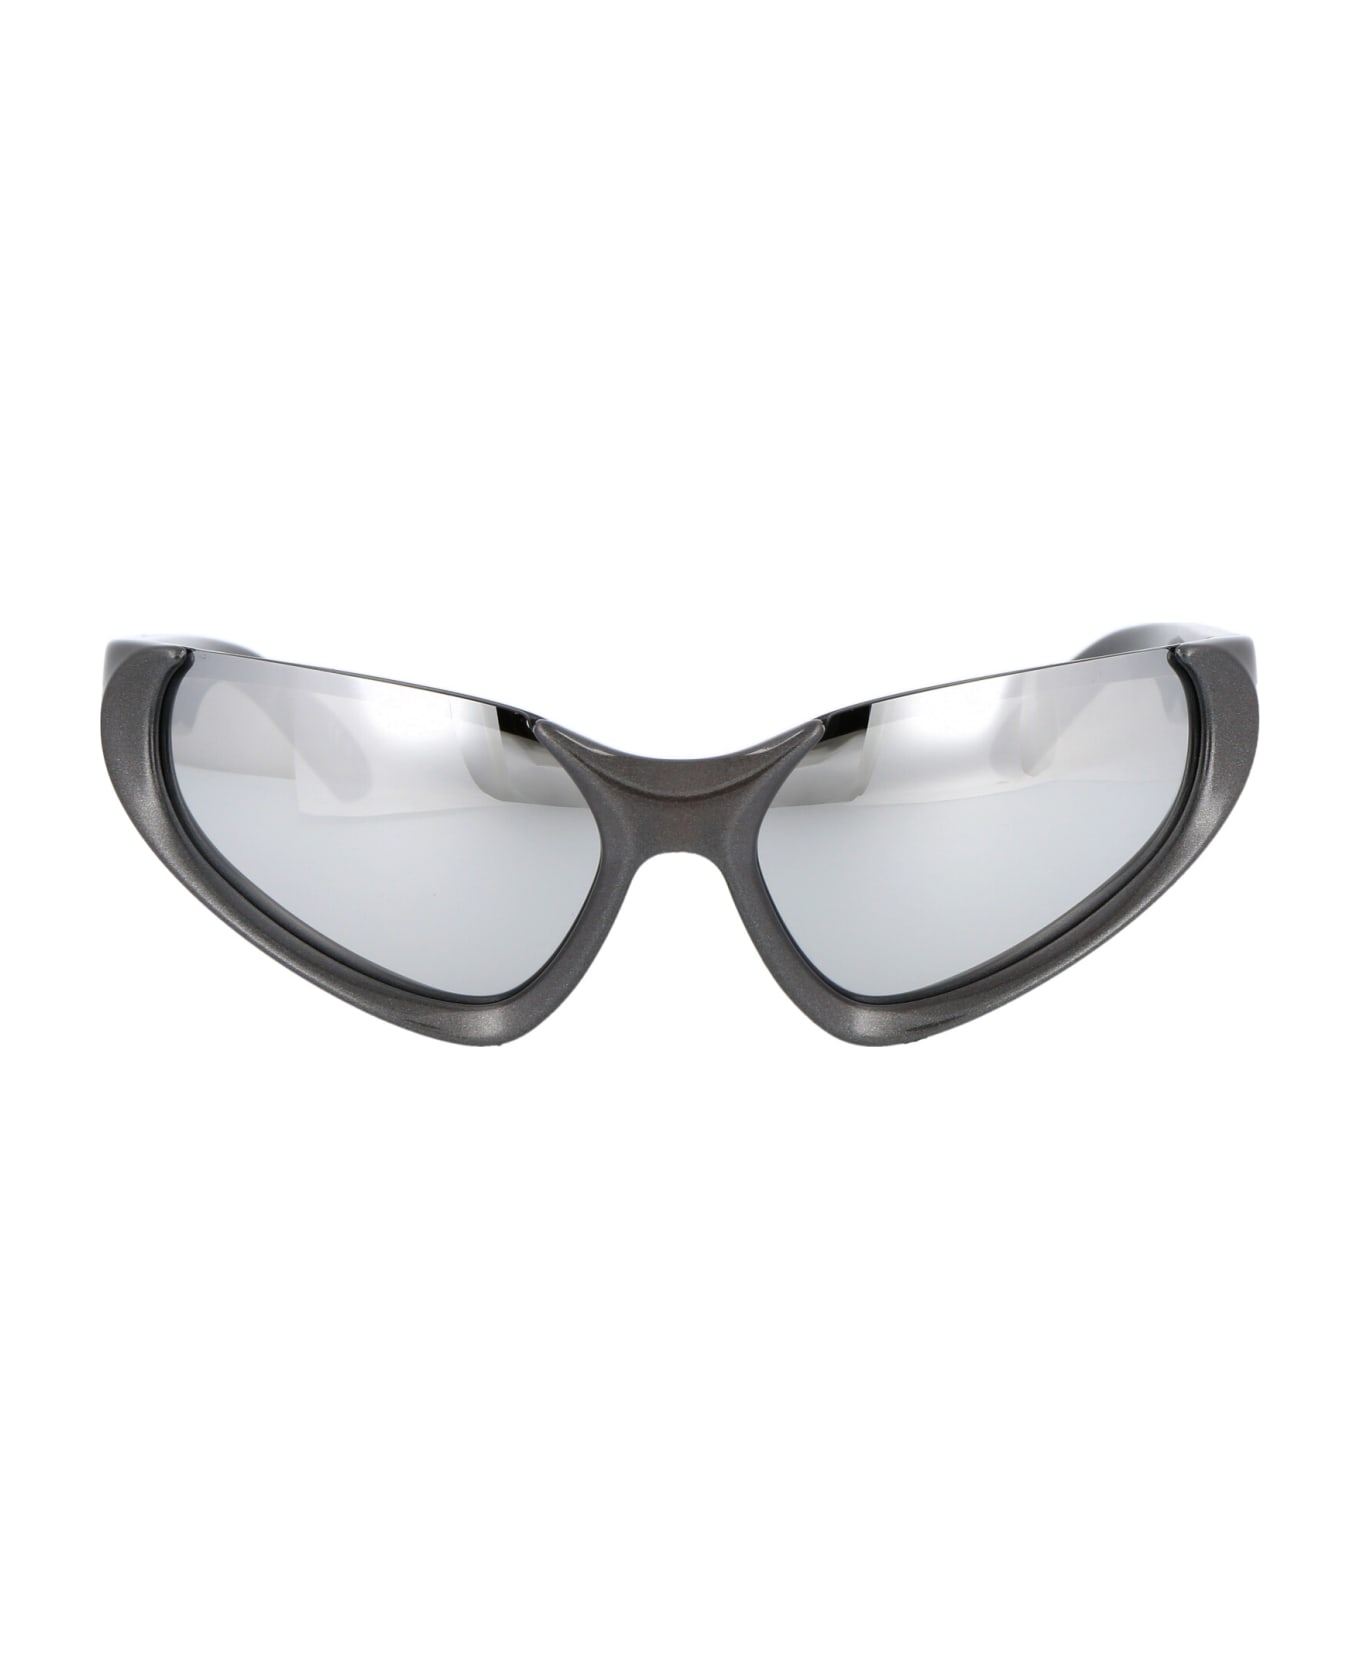 Balenciaga Eyewear Bb0202s Sunglasses - 002 SILVER SILVER SILVER